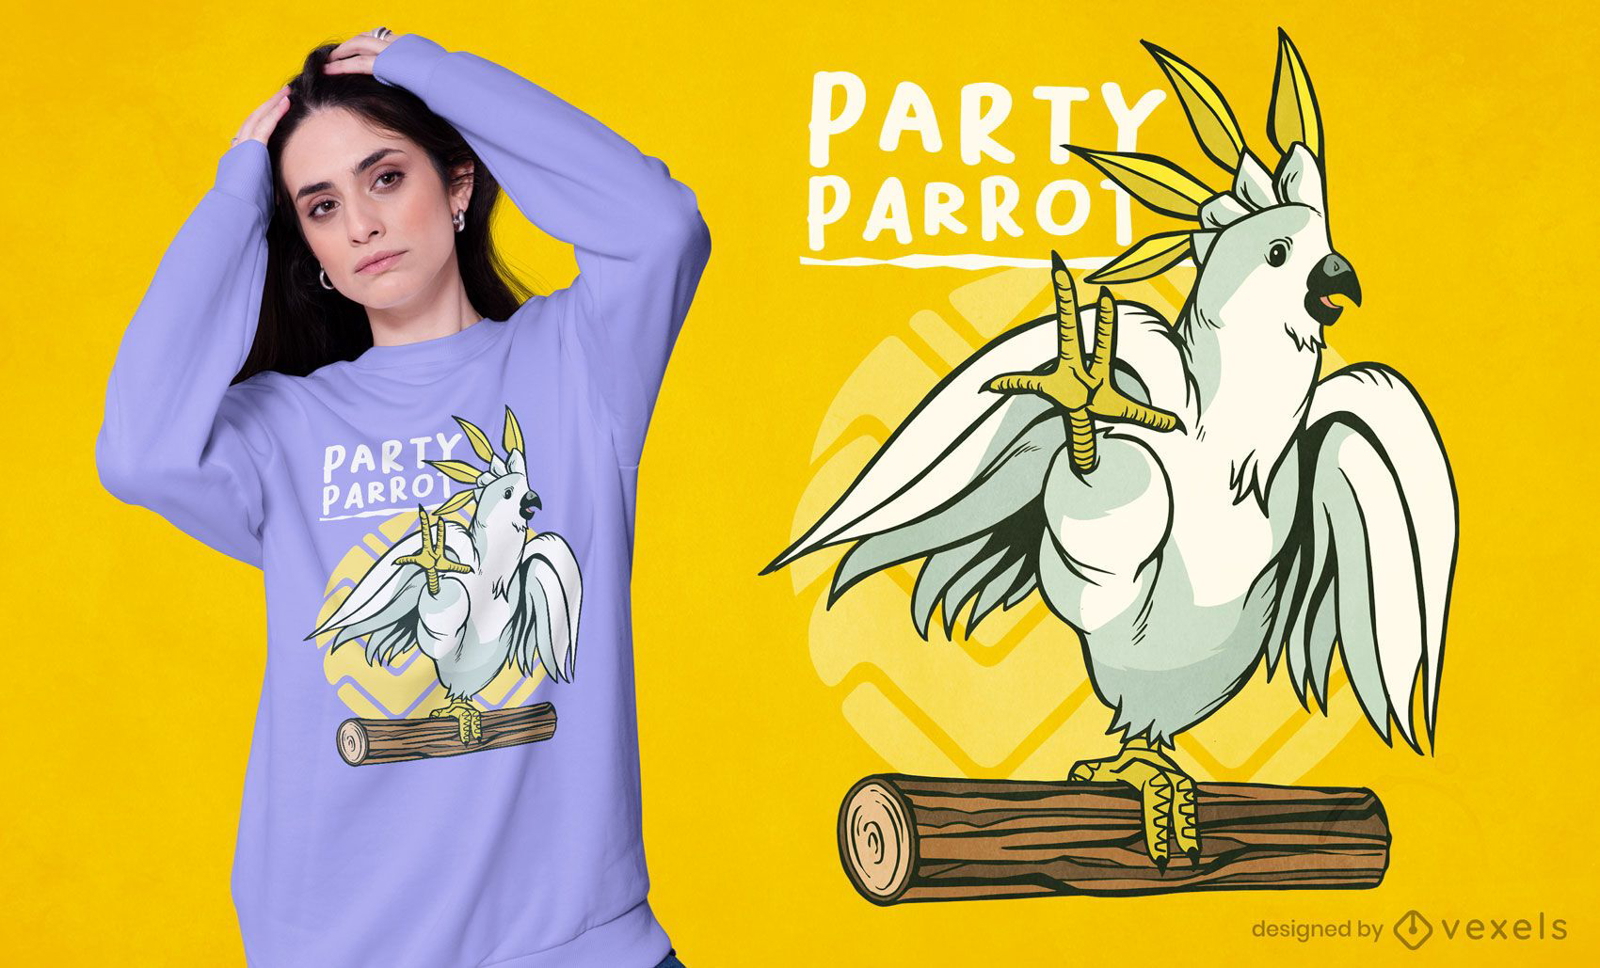 Party parrot bird t-shirt design